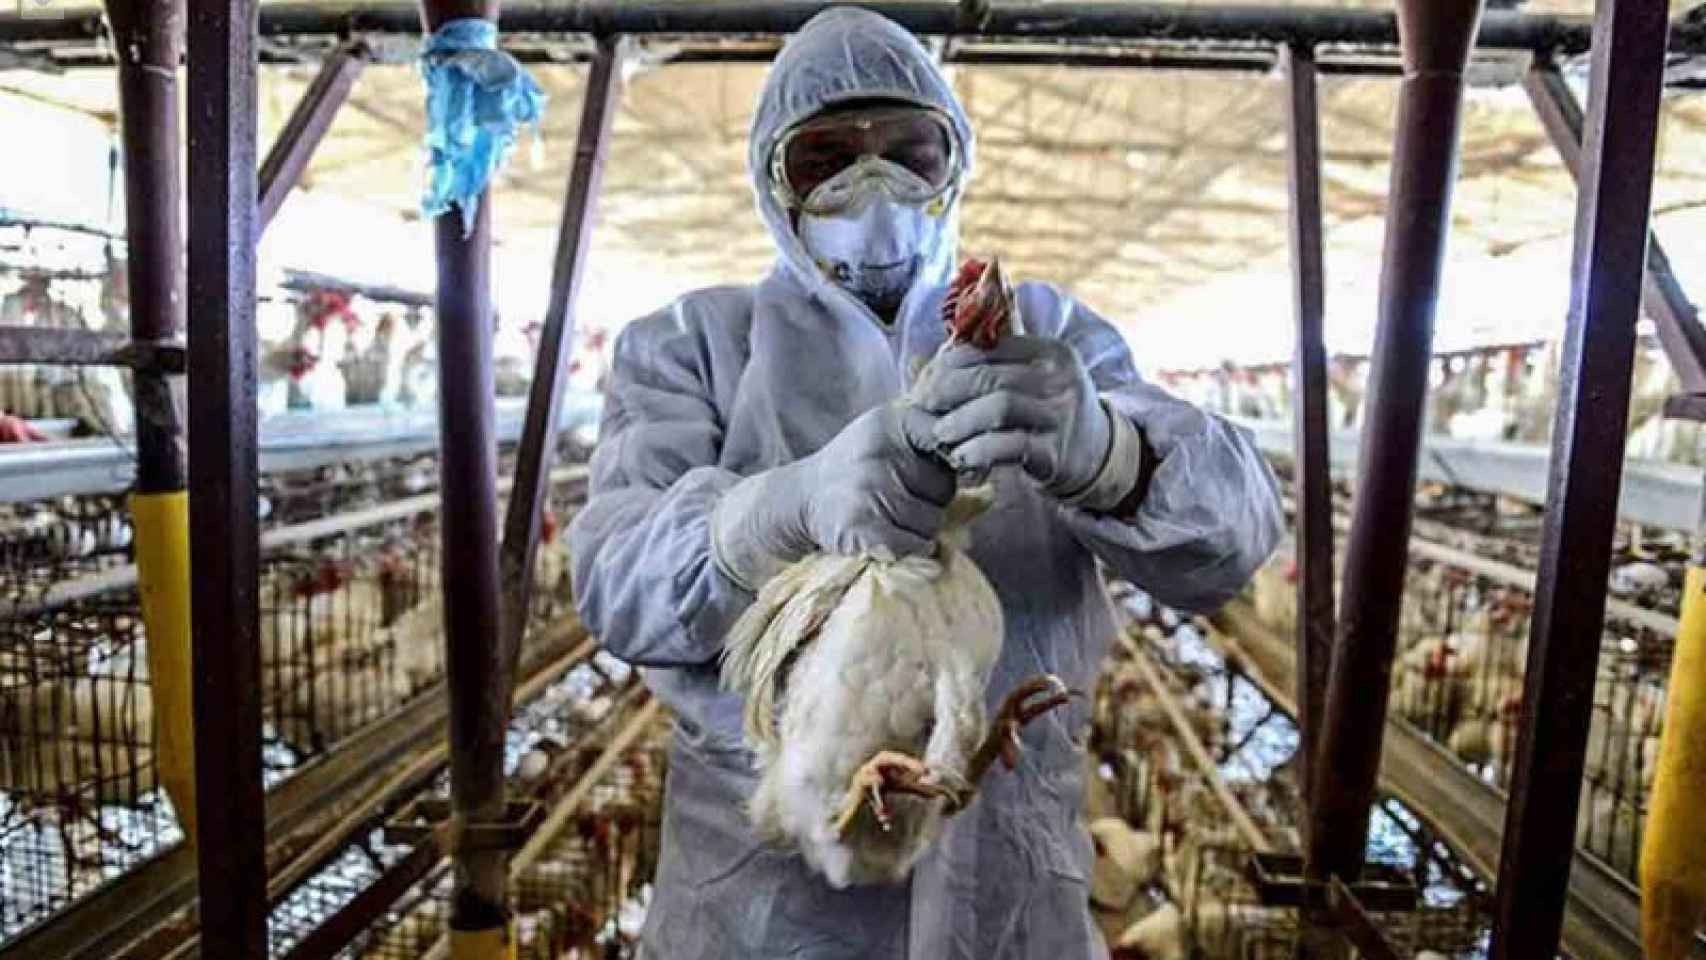 Por qué la gripe aviar preocupa tanto: el virus H5N1 ya ha matado antes a cientos de personas